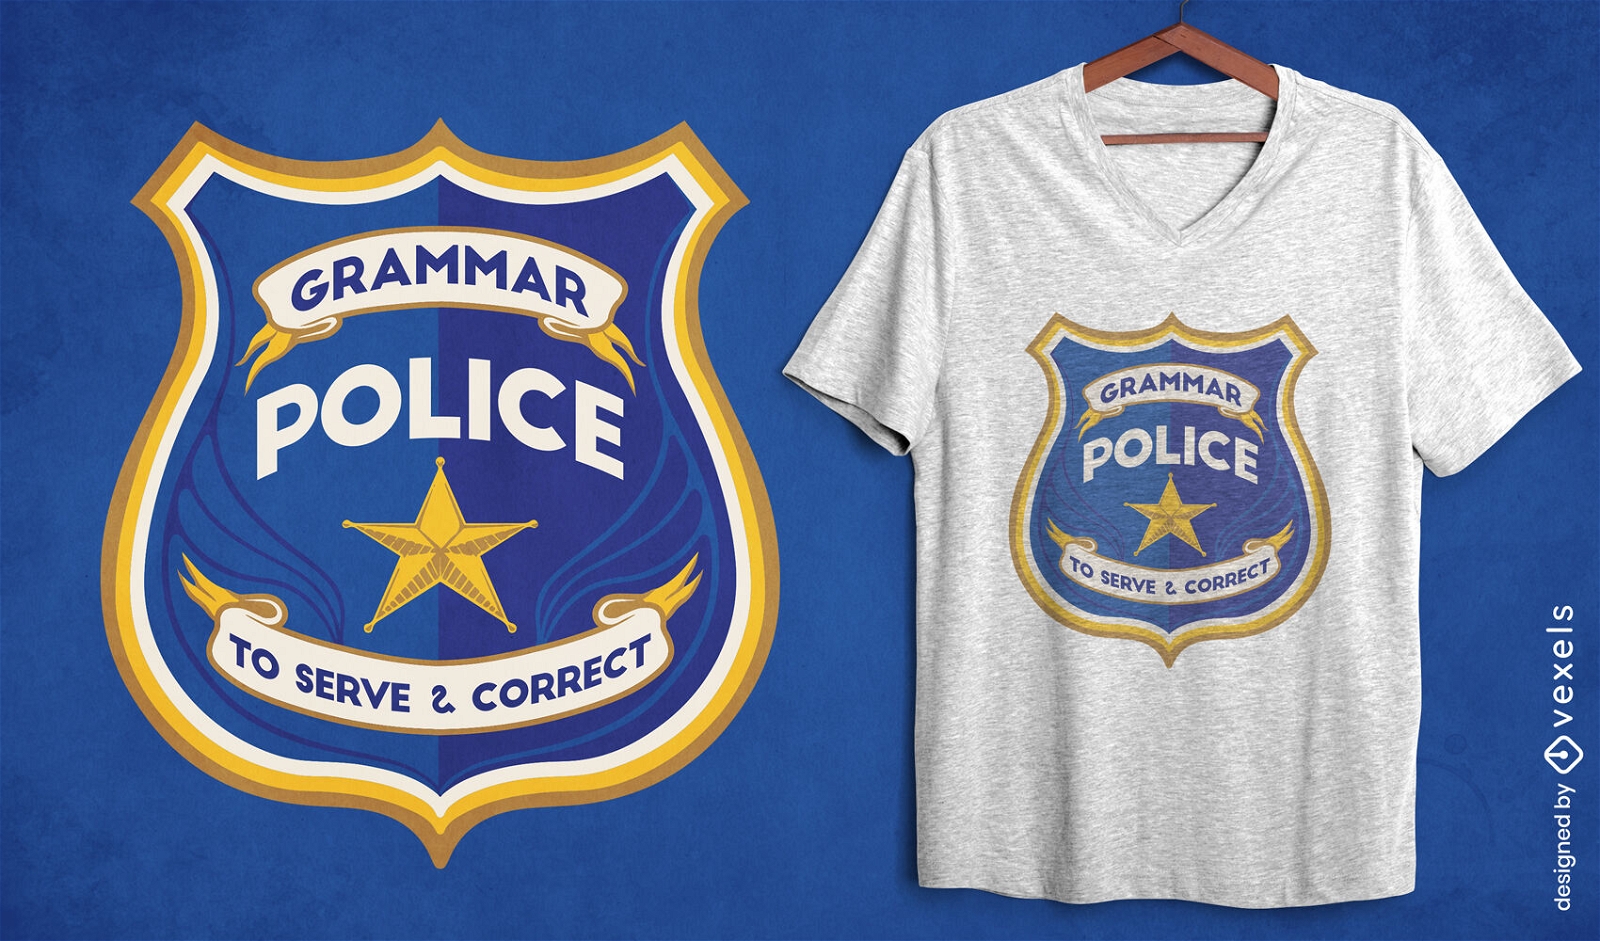 Dise?o de camiseta de insignia oficial de polic?a de gram?tica